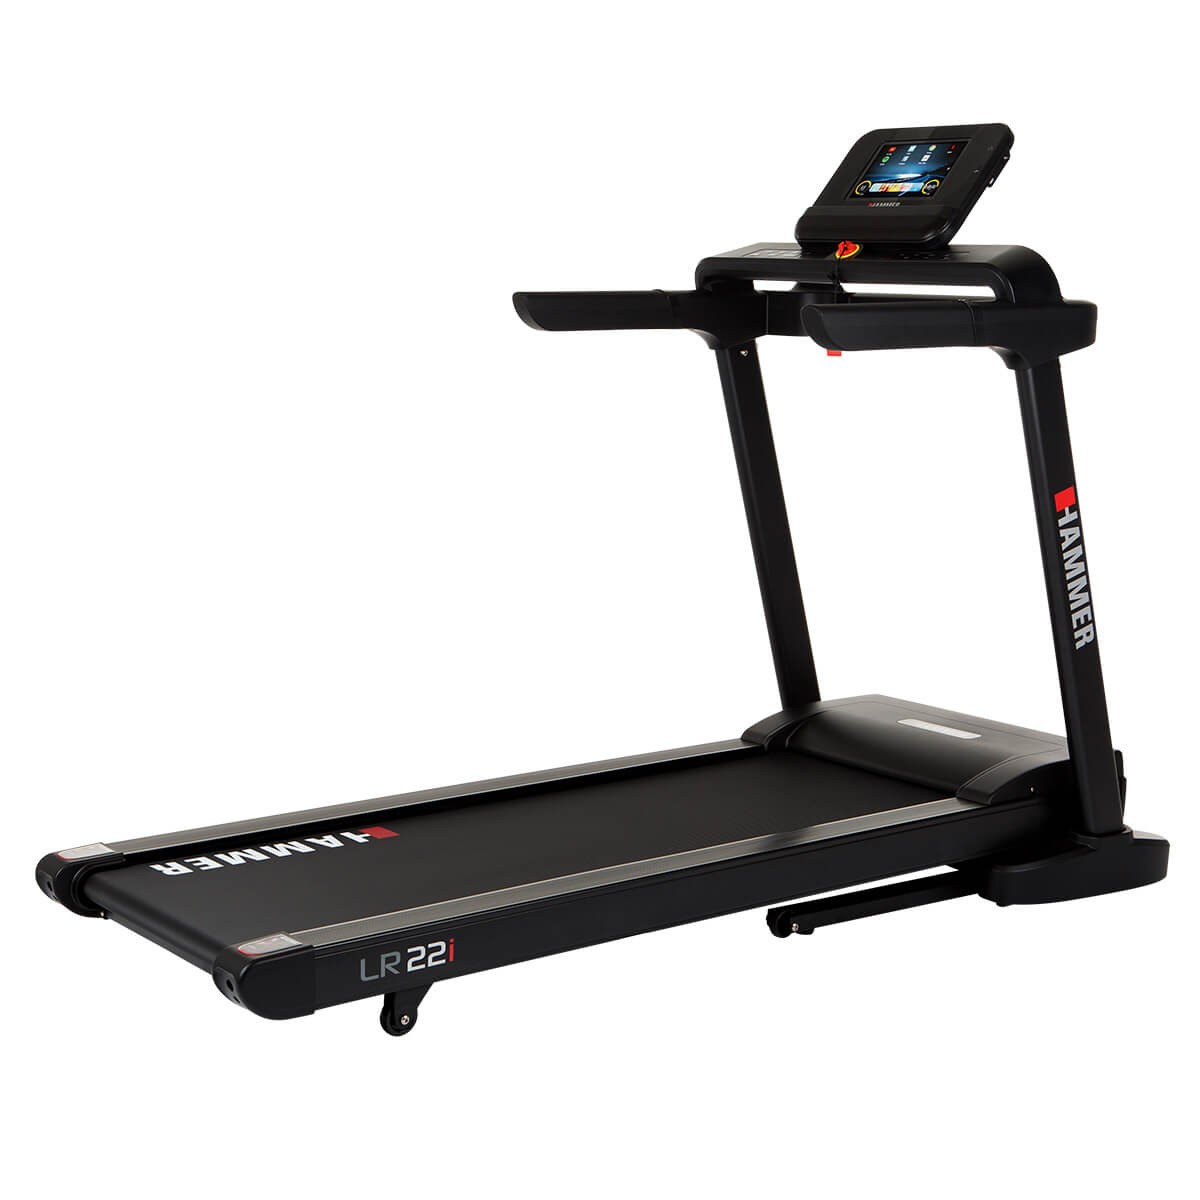 Hammer Life Runner Treadmill LR22i TFT